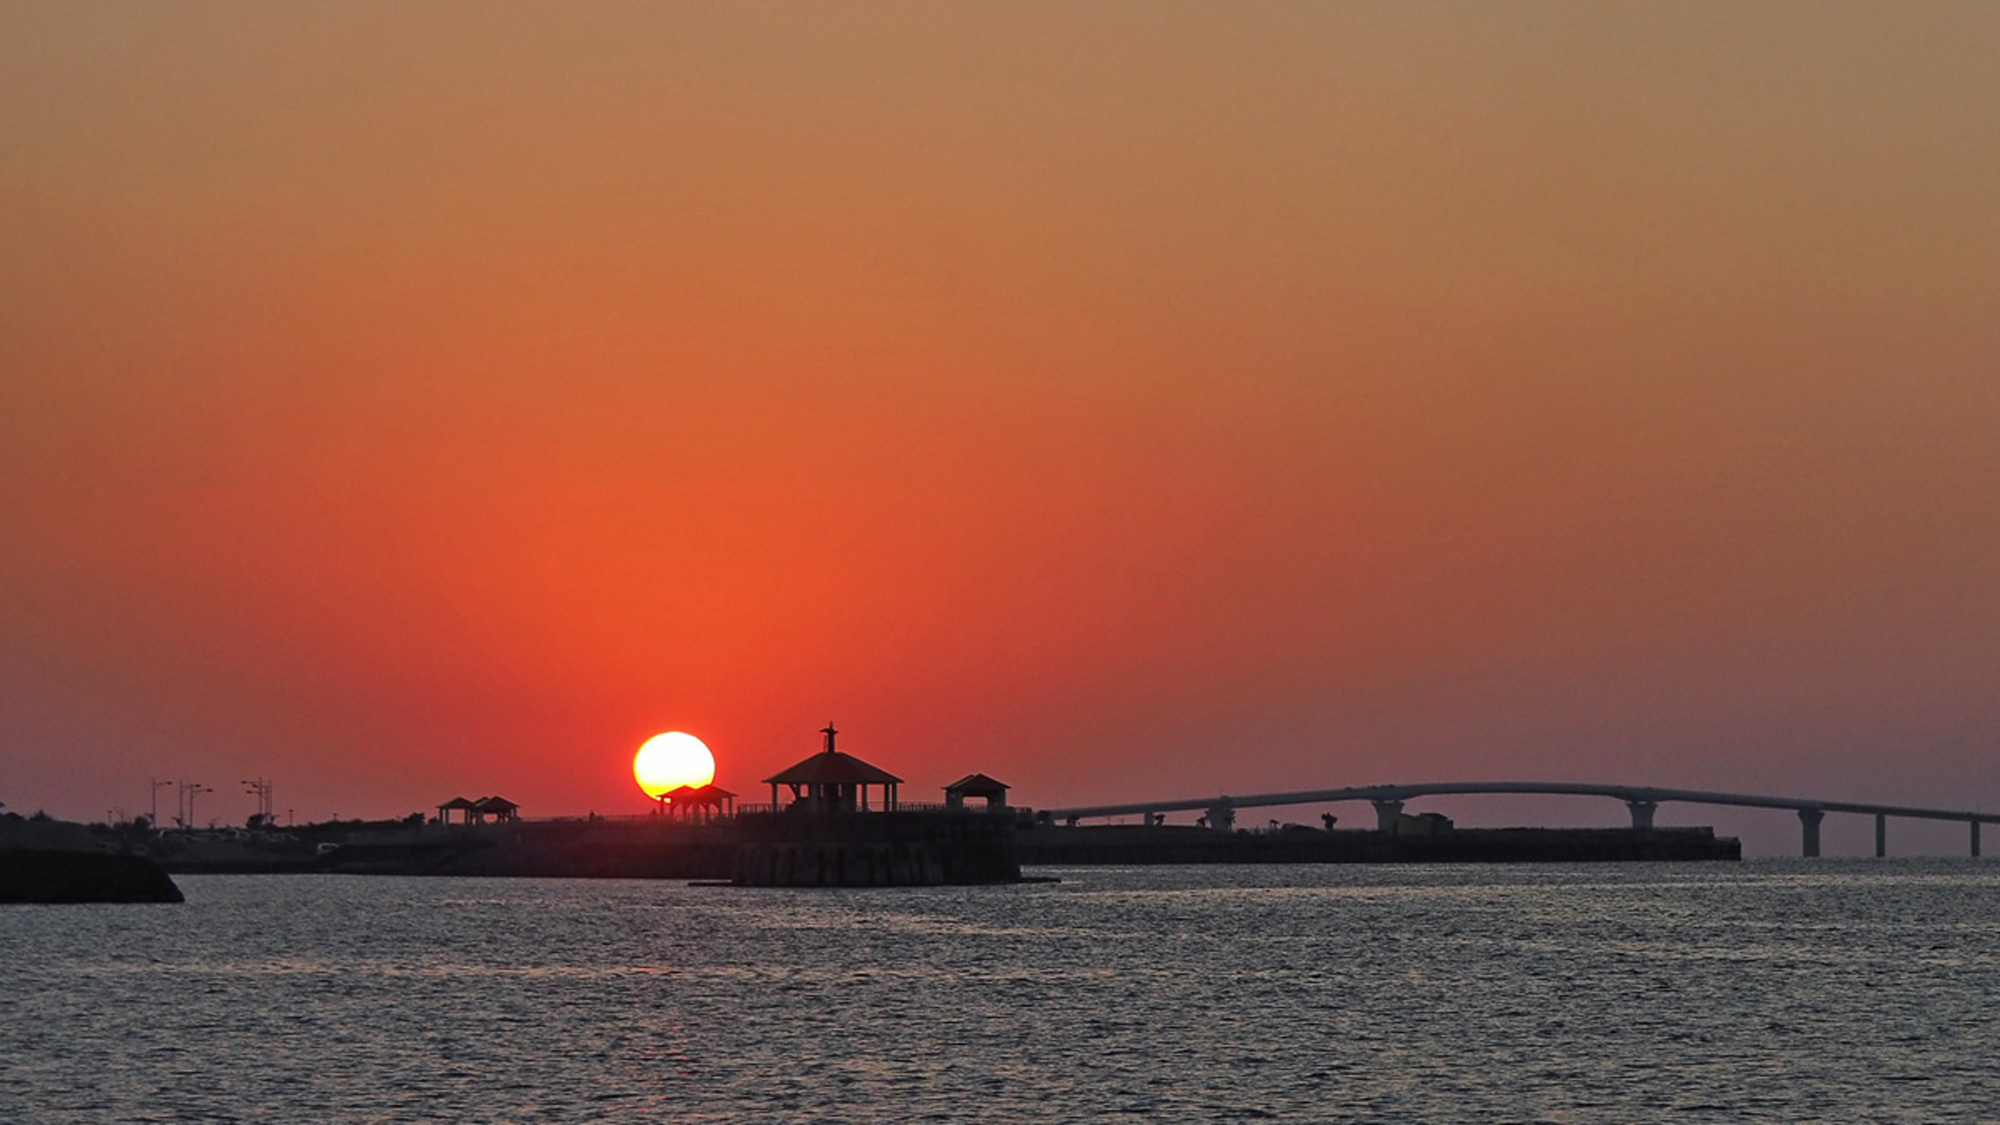 【サンセット】伊良部大橋と海へと沈む夕日。宮古島には夕日スポットがたくさんあります。